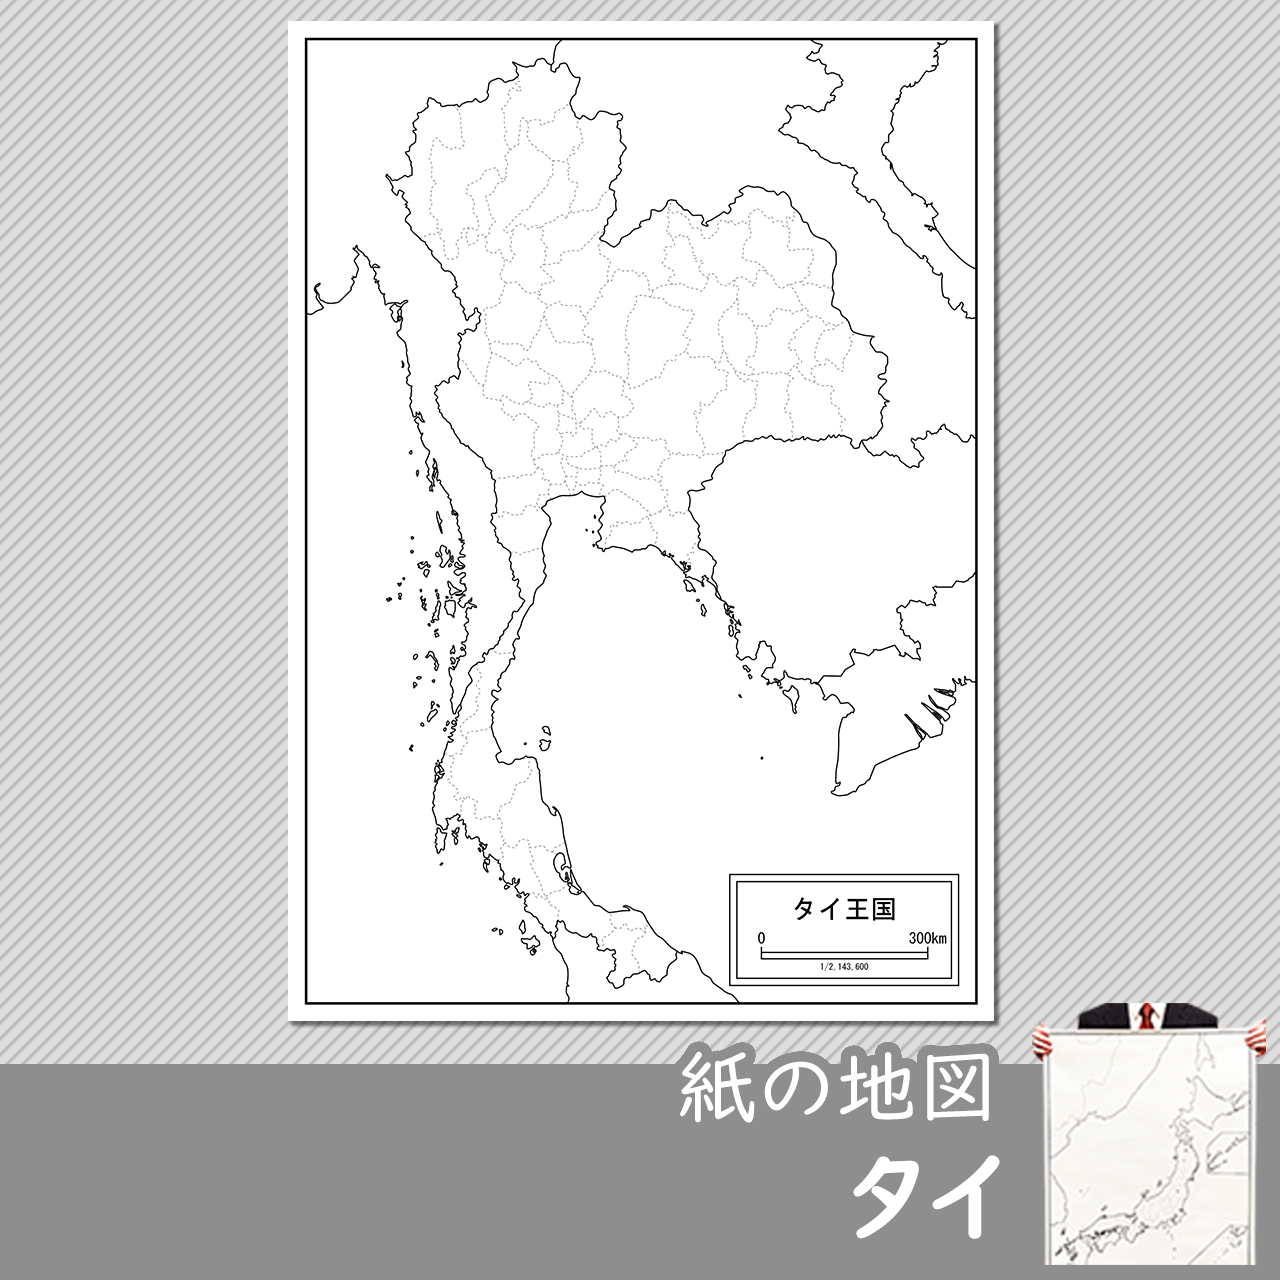 タイの紙の白地図のサムネイル